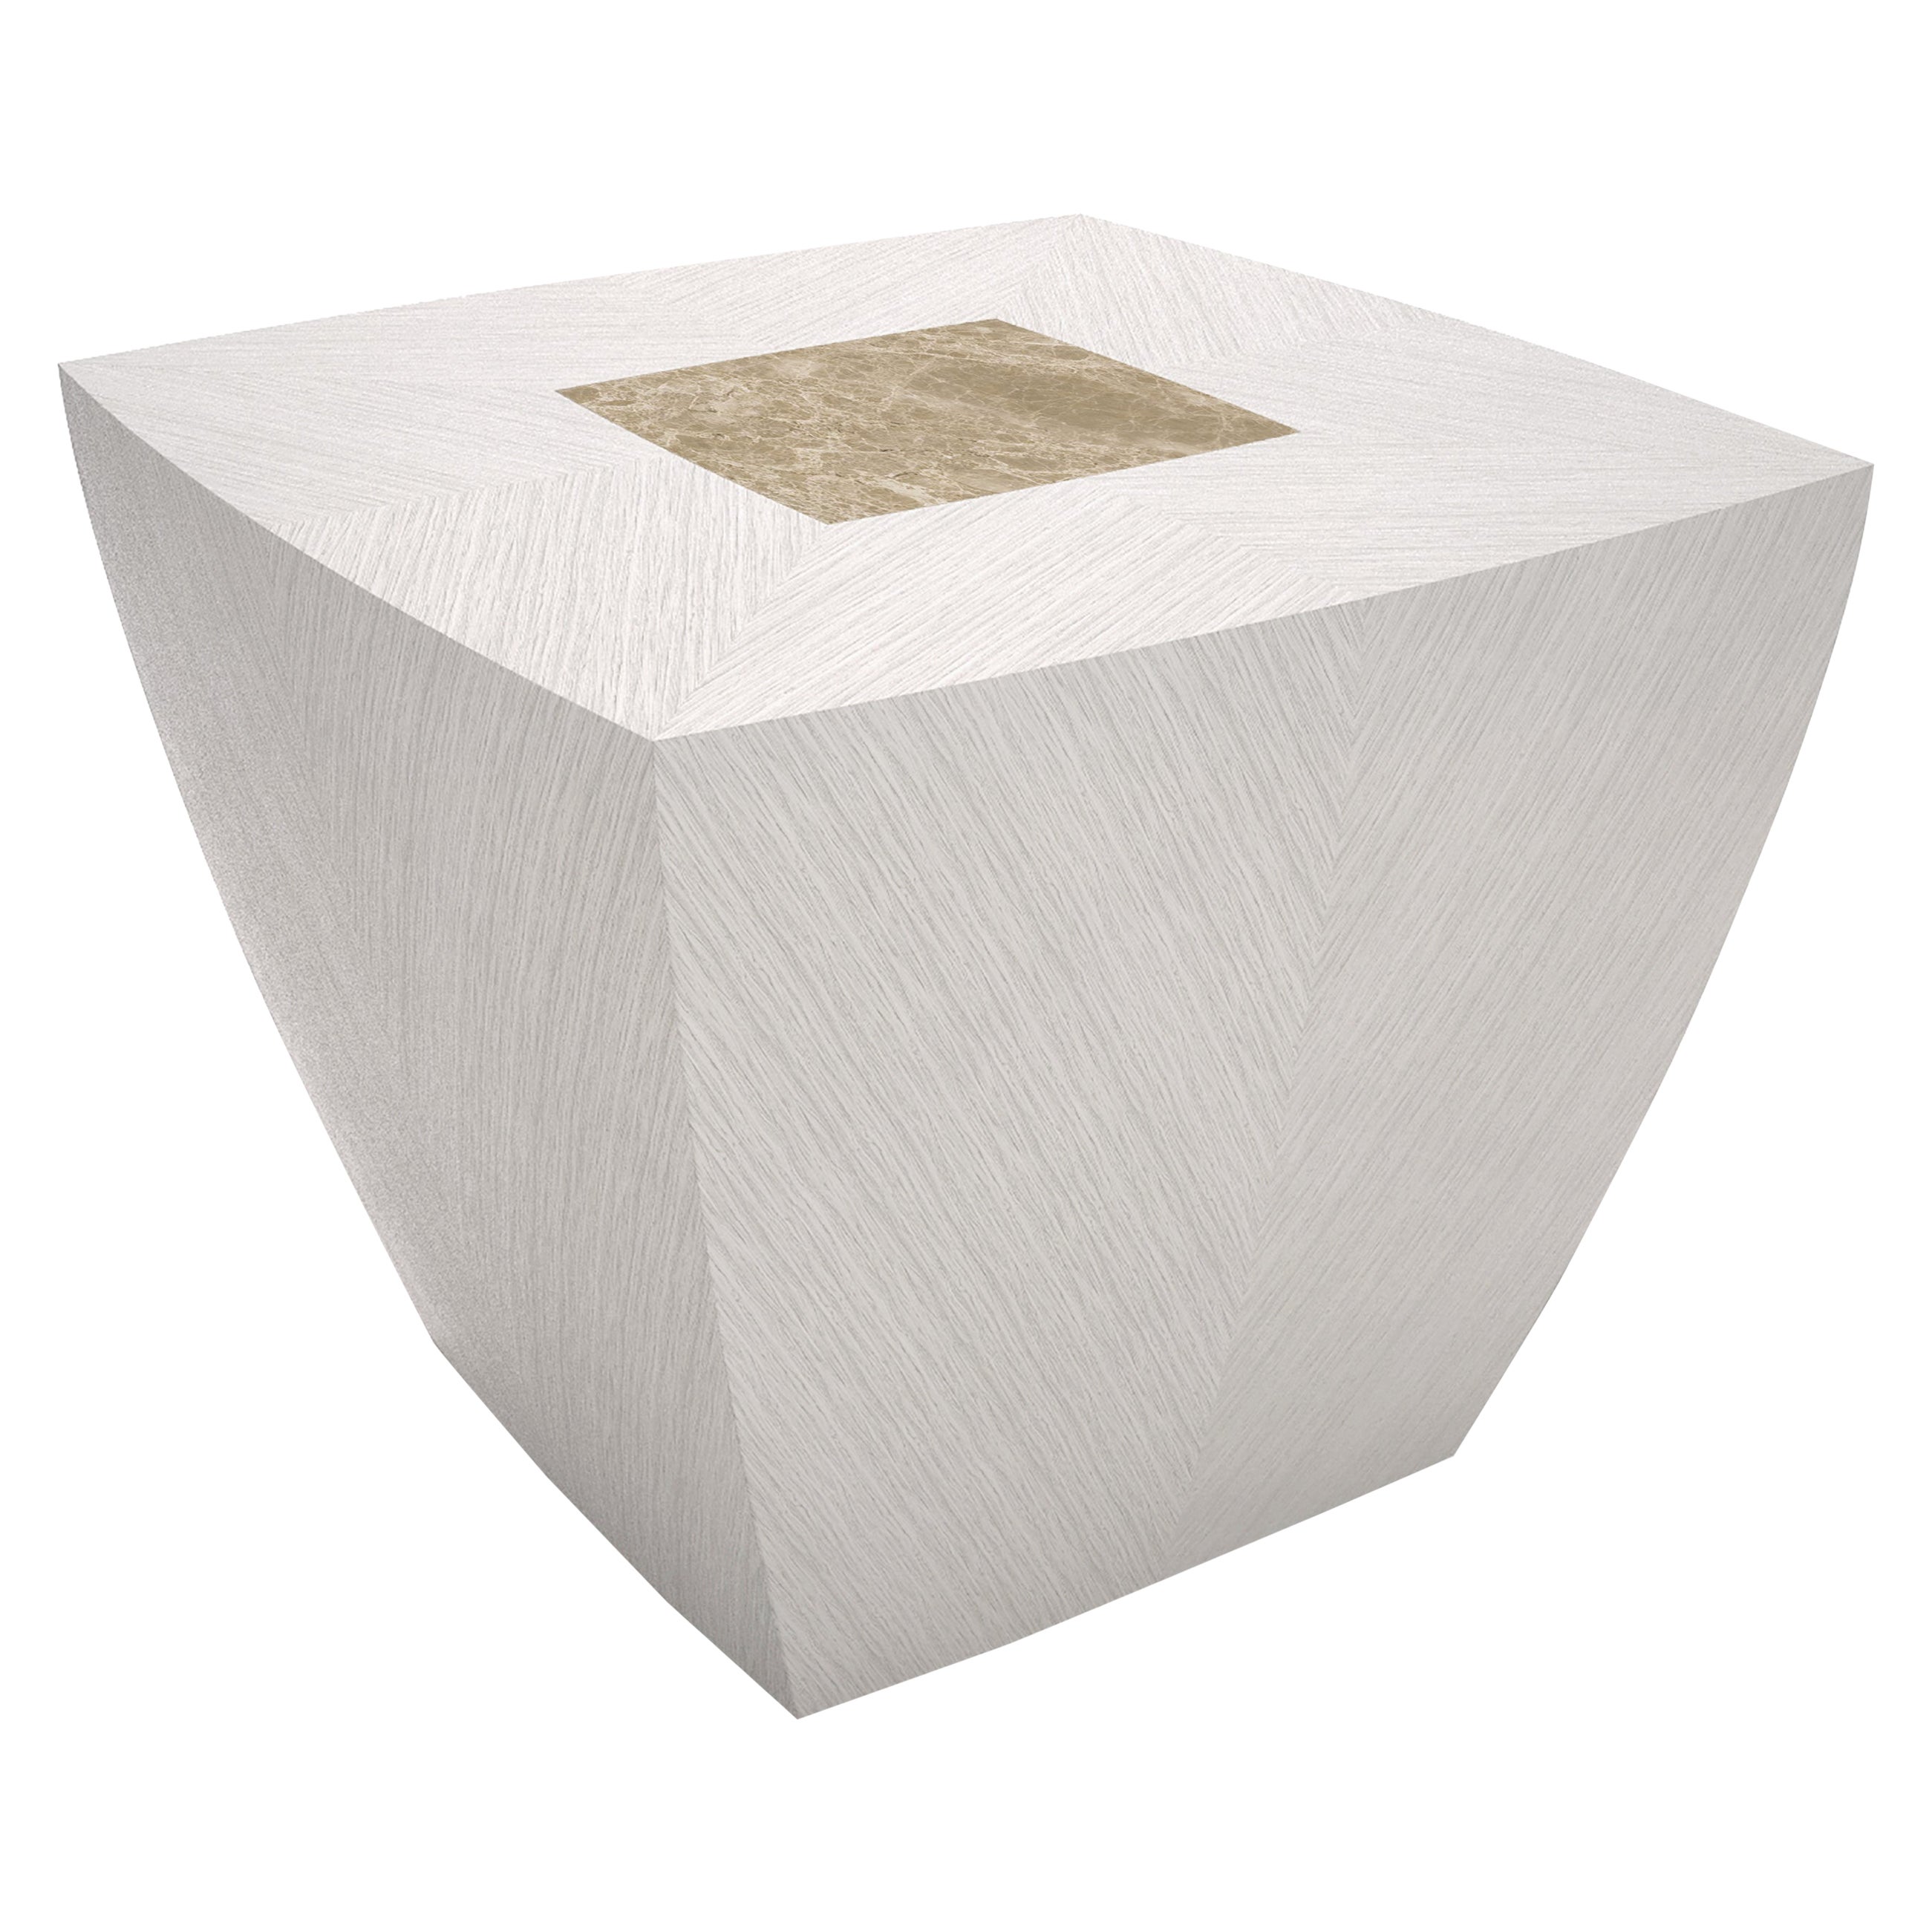 Table d'appoint carrée moderne en bois blanc Thay et laiton, fabriquée en Italie